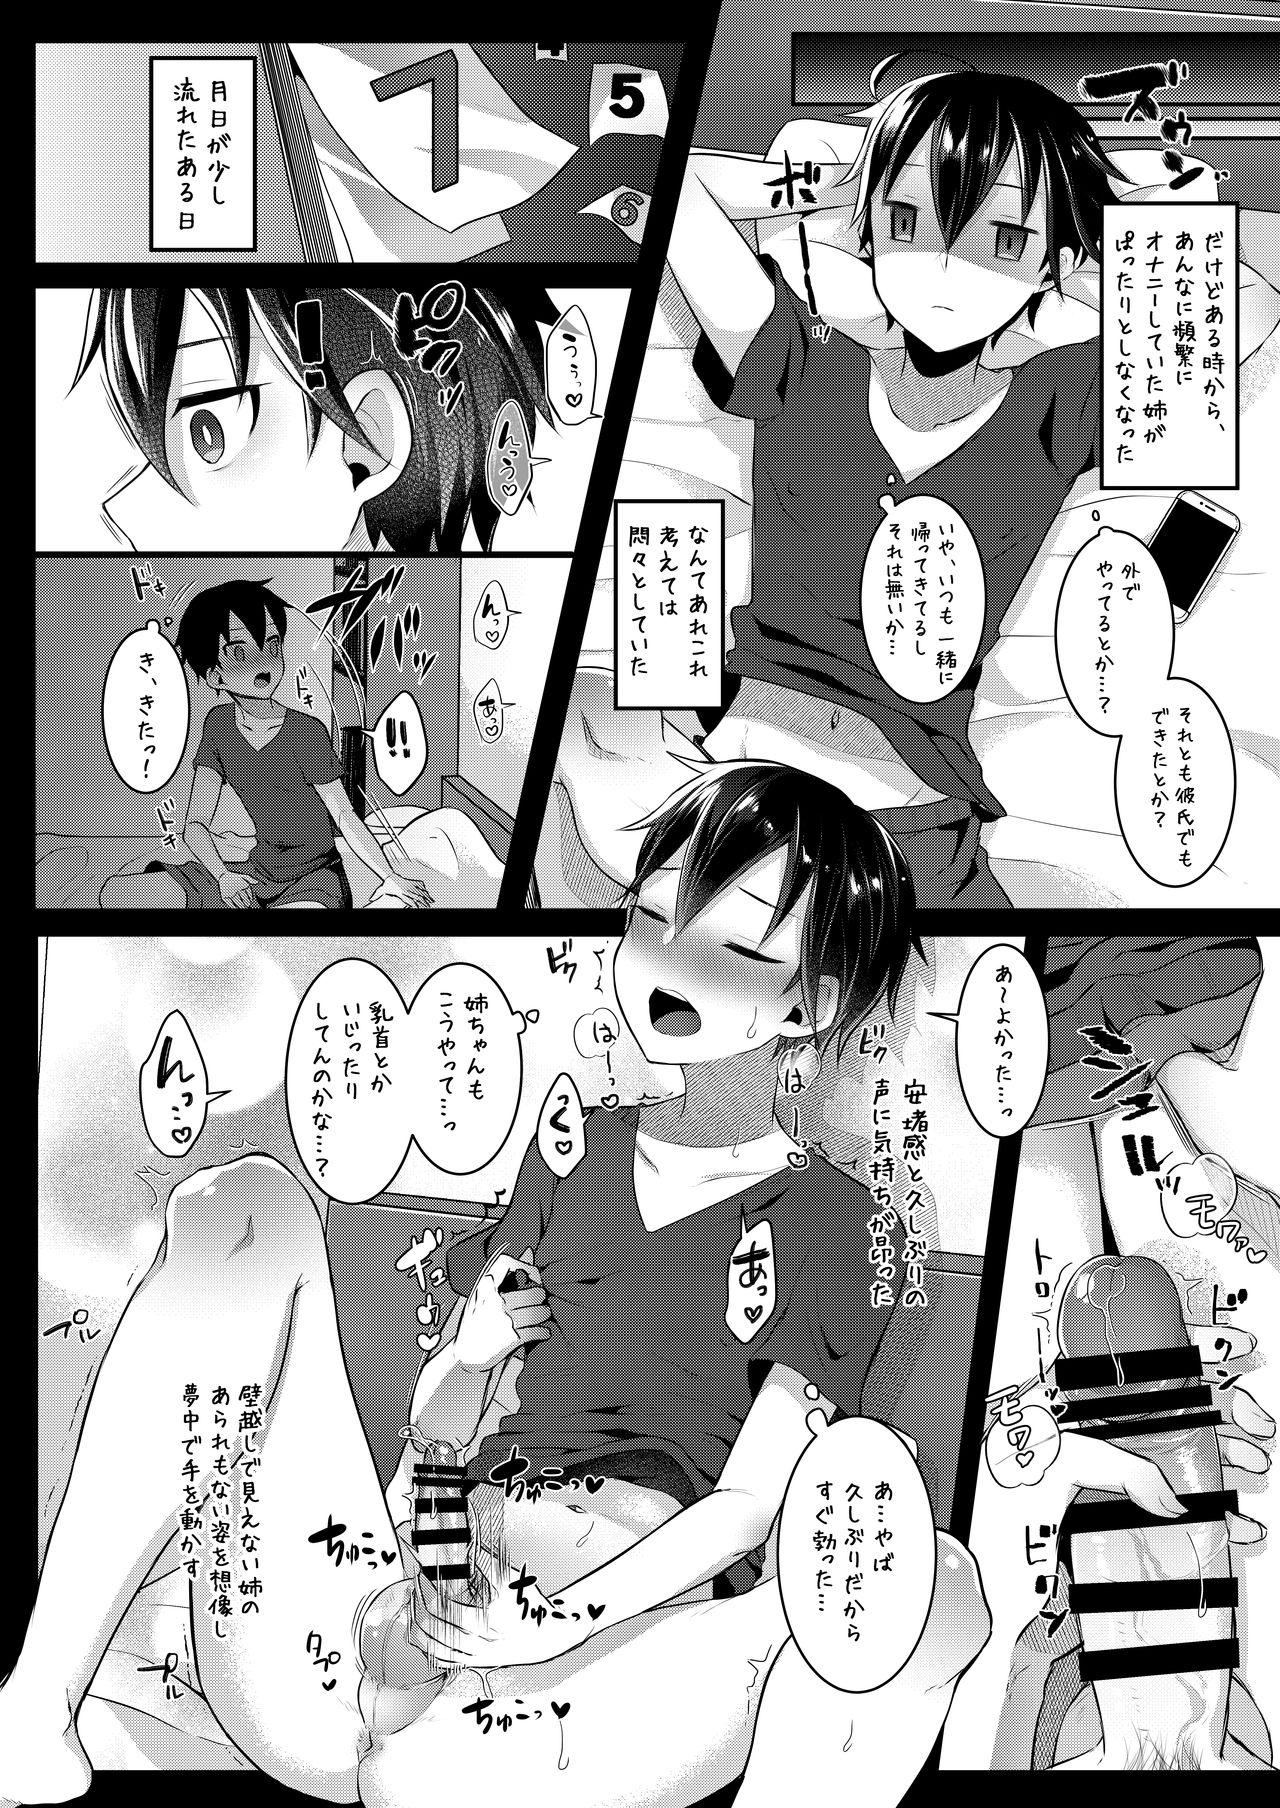 Mas Futanari Nebosuke no Asa no Seikatsudo 2 - Original Sucks - Page 9